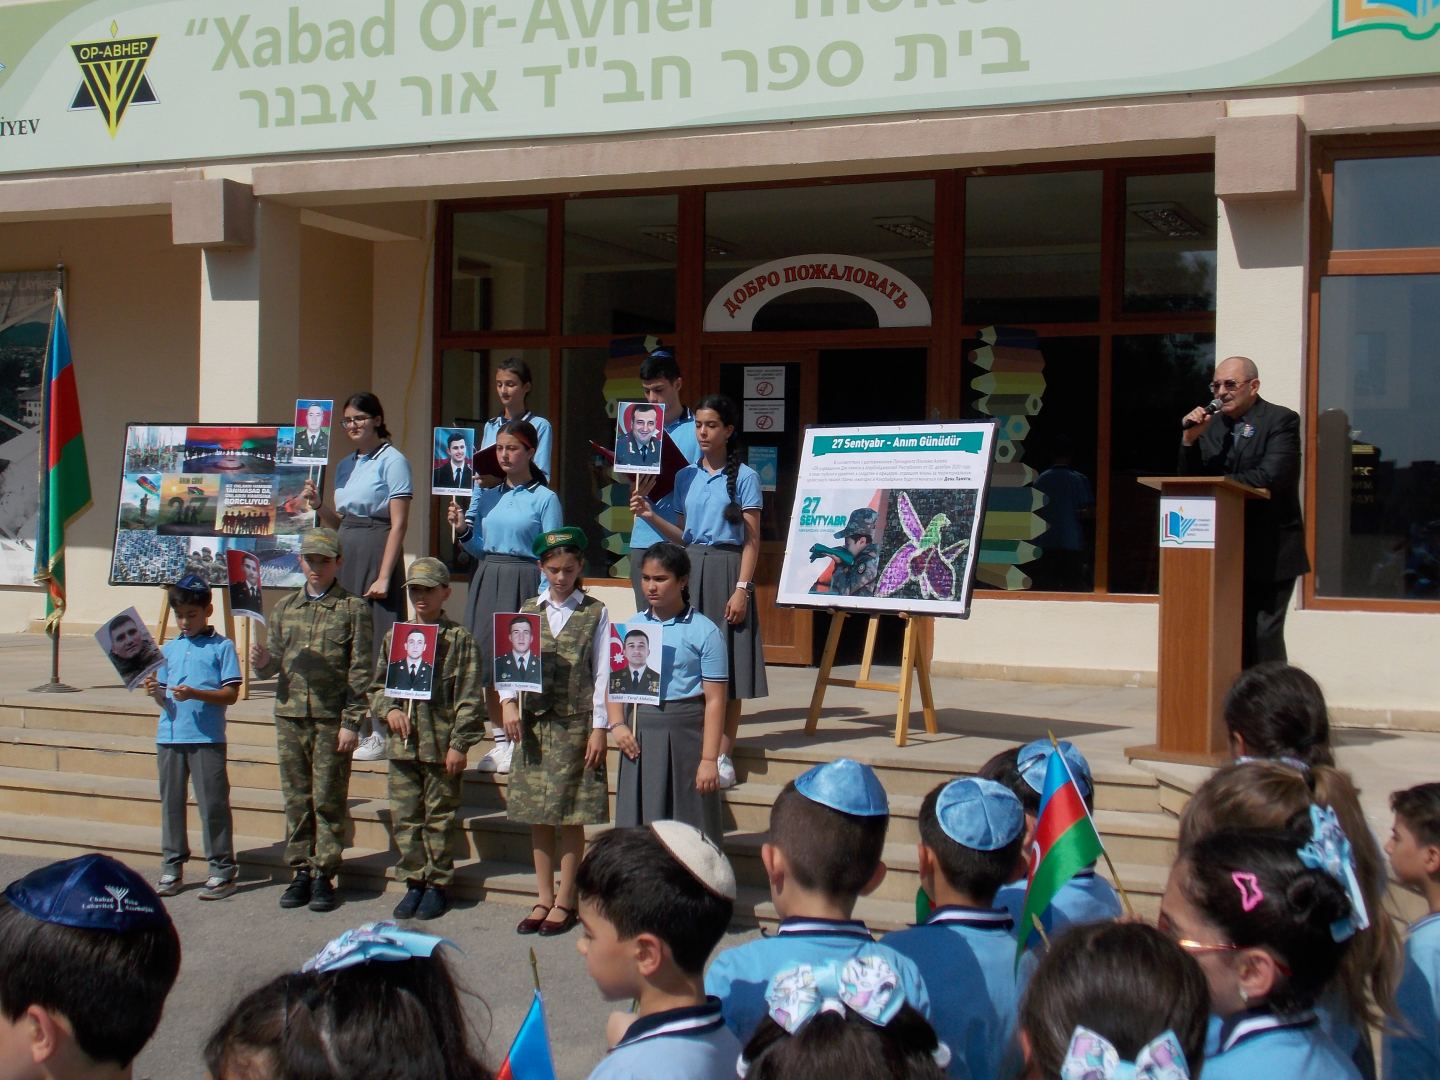 В Бакинской еврейской школе прошло мероприятие, посвященное 27 сентября - Дню памяти (ФОТО)